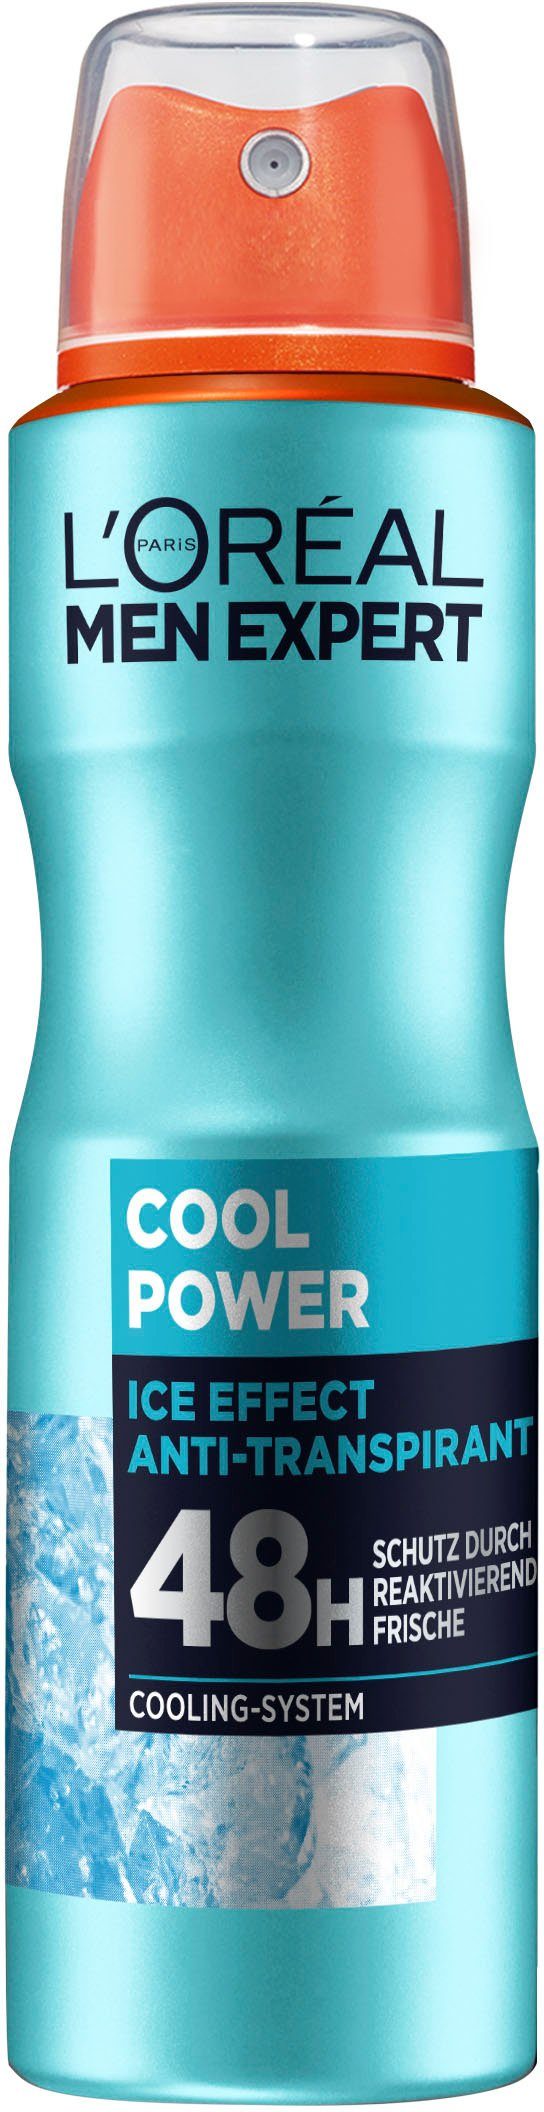 Cool Power, EXPERT PARIS L'ORÉAL Deo-Spray MEN mit 48H Cooling-Effekt